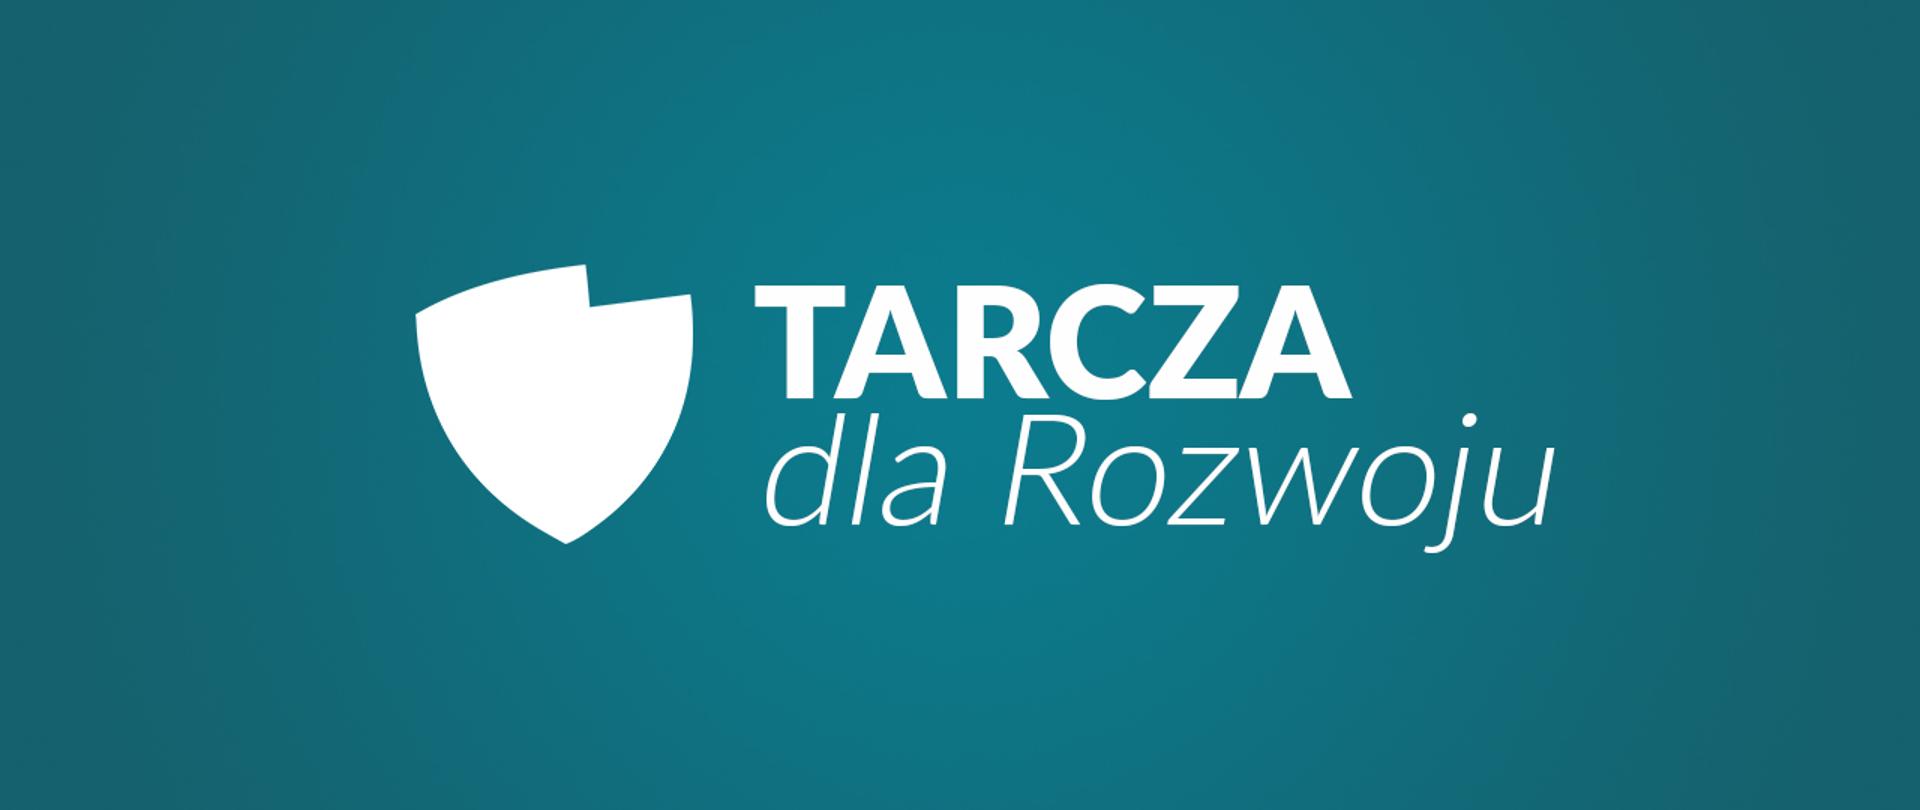 logo Tarcza dla rozwoju